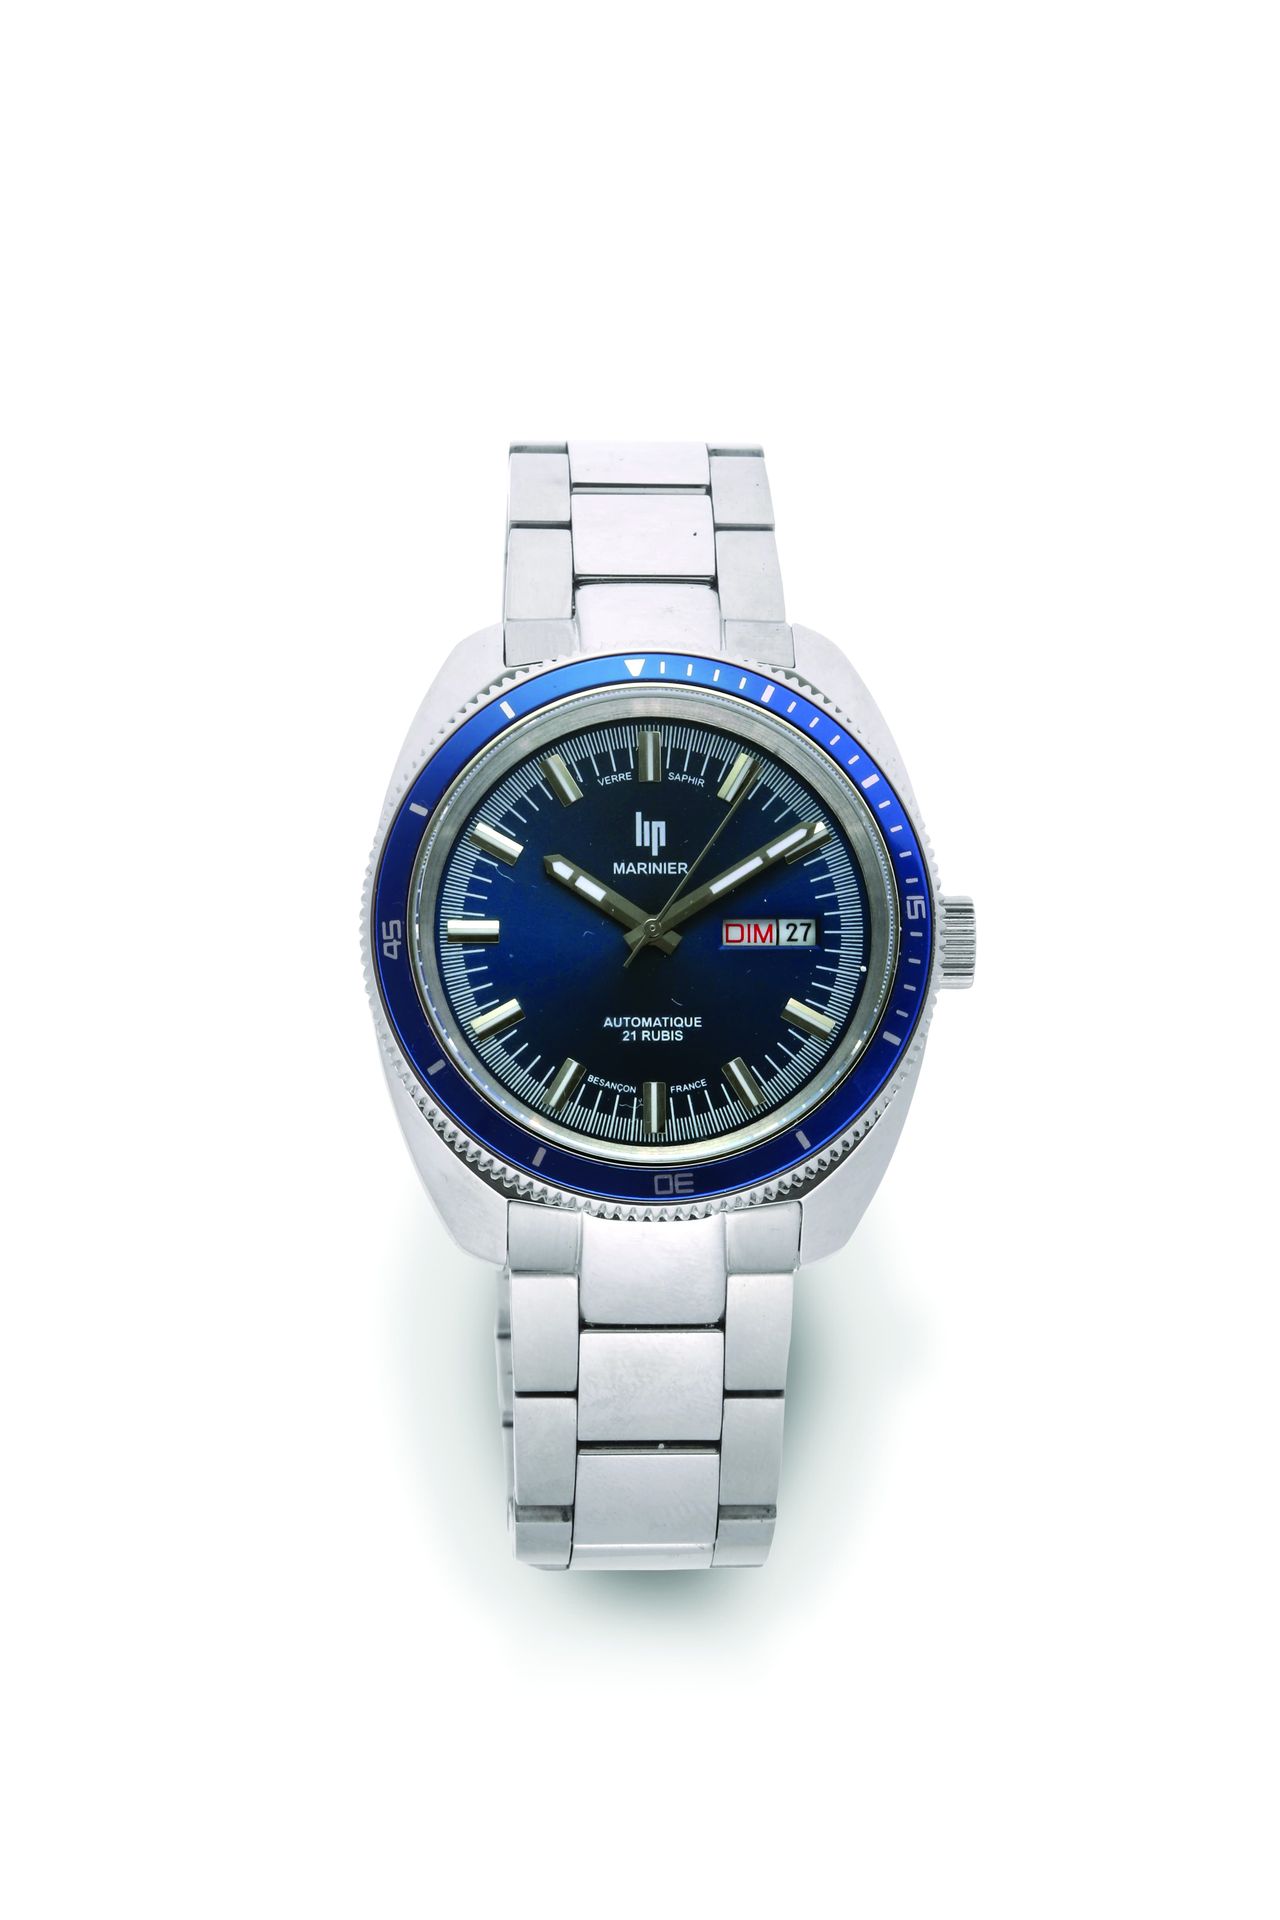 LIP Mariner (moderno)
Reloj deportivo de acero con movimiento mecánico - Caja al&hellip;